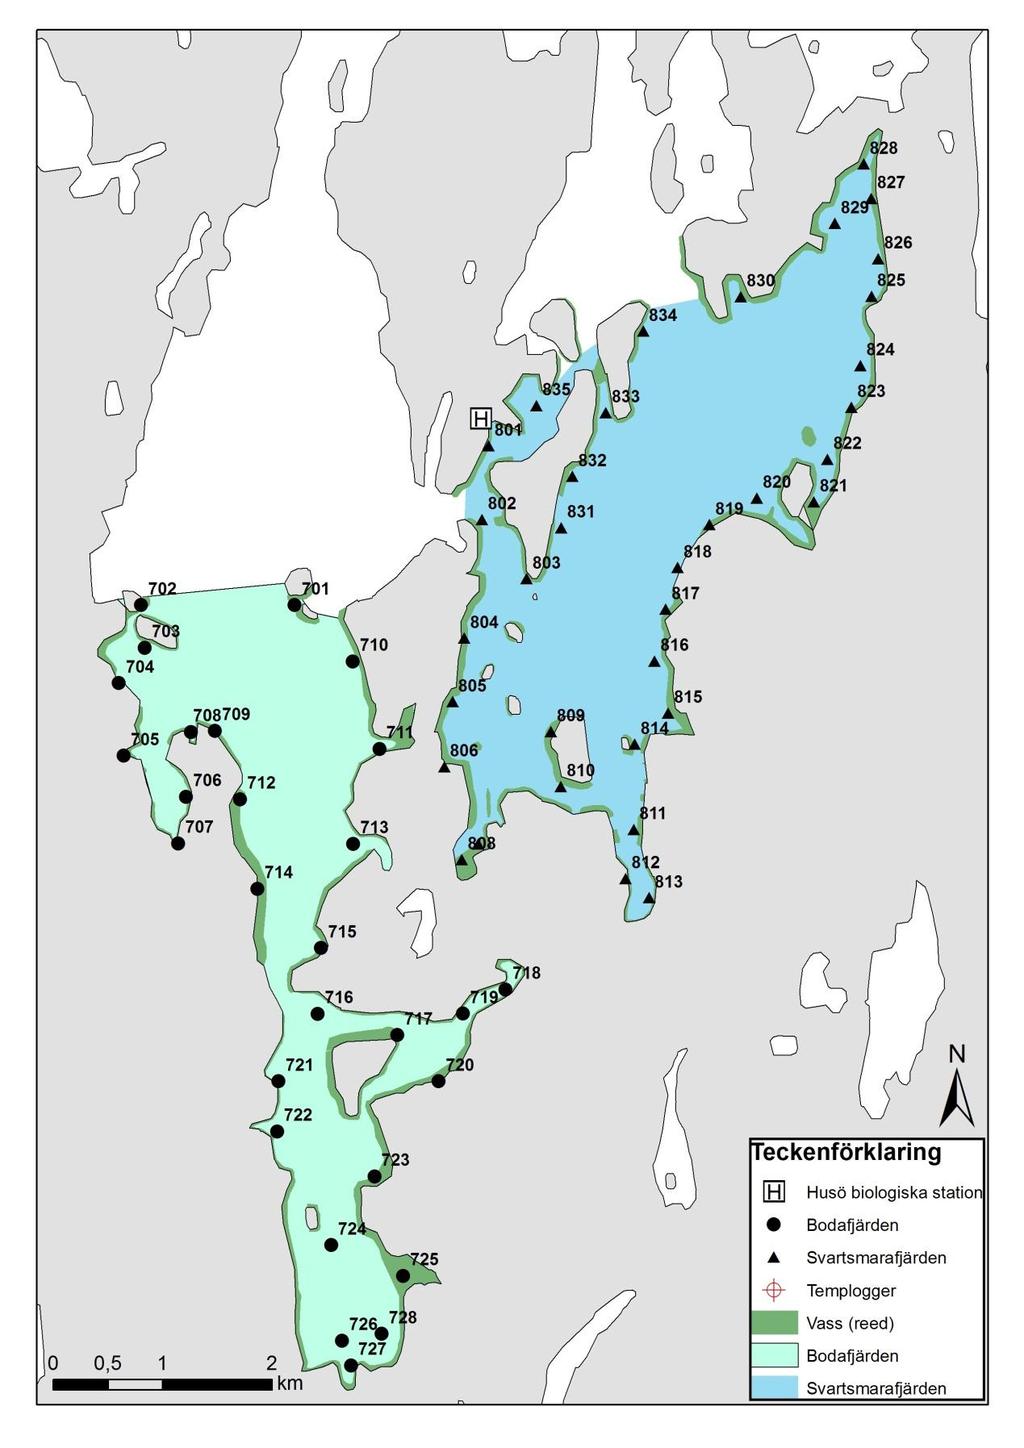 8 Figur 5. Provtagningspunkterna, vassutbredningen samt temploggernas placering i Bodafjärden (701-727) och Svartsmarafjärden (801-835). Det färglagda områden anger provtagningsområdets gränser.